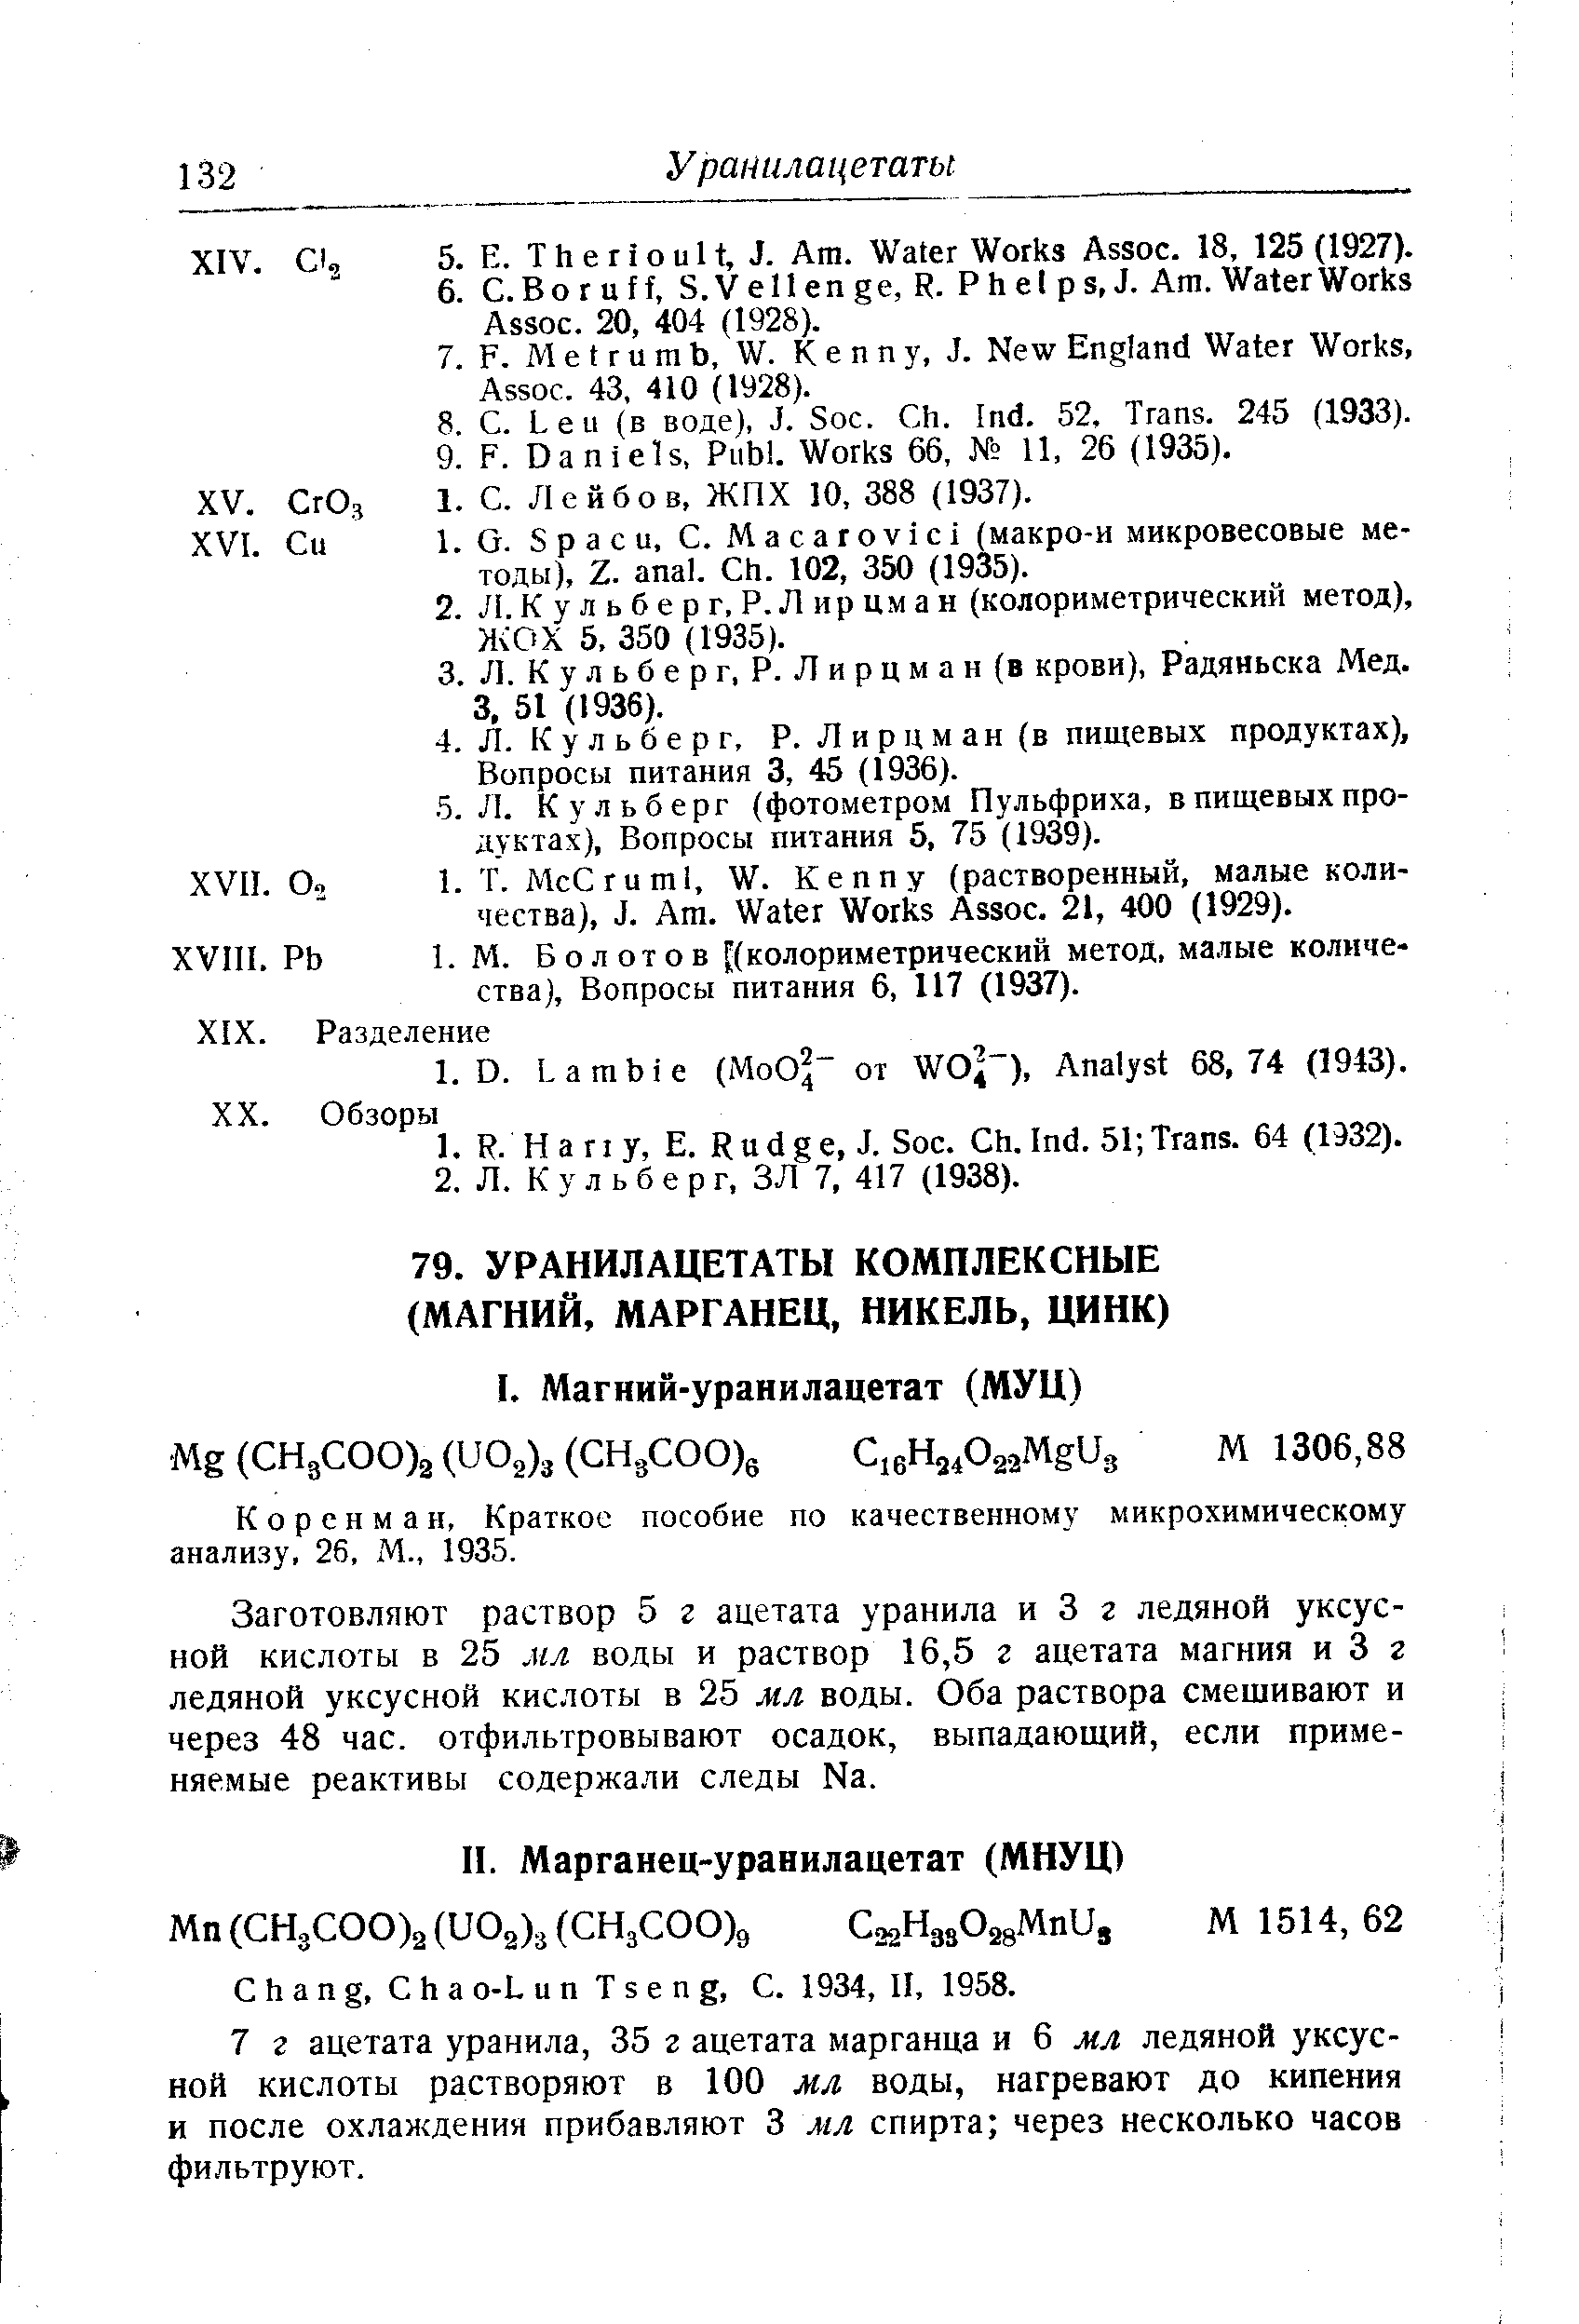 Коренман, Краткое пособие по качественному микрохимическому анализу, 26, М., 1935.